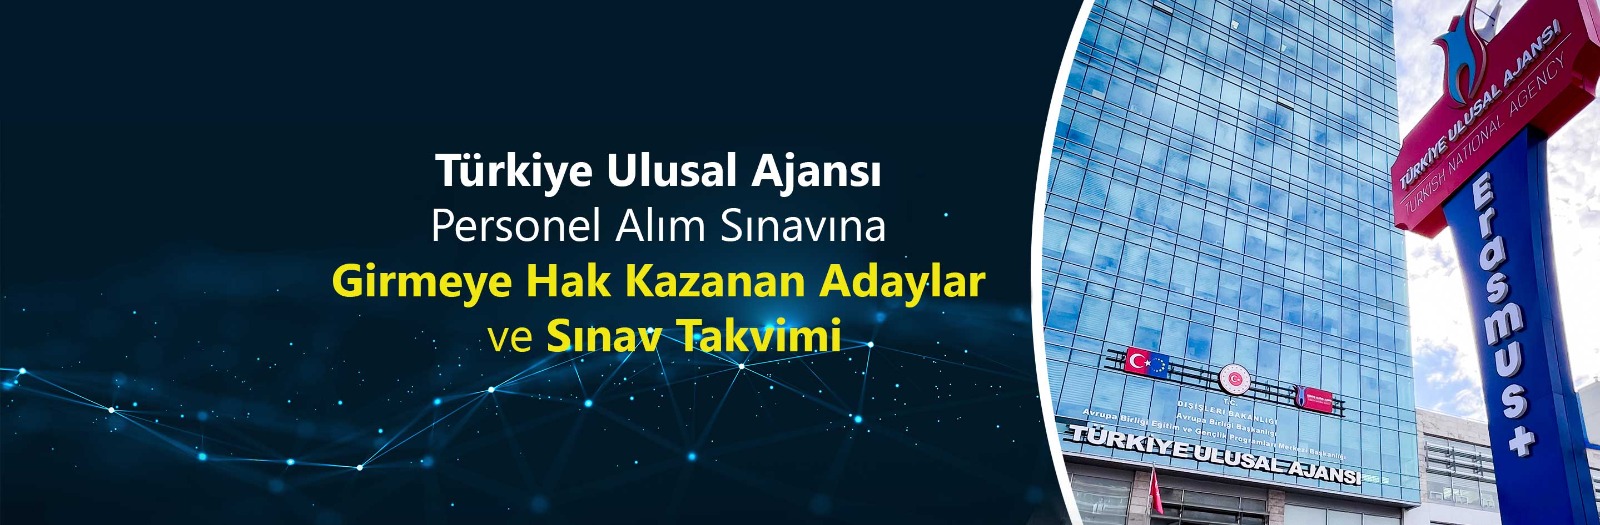 Türkiye Ulusal Ajansı Personel Alım Sınavına Girmeye Hak Kazanan Adaylar ve Sınav Takvimi